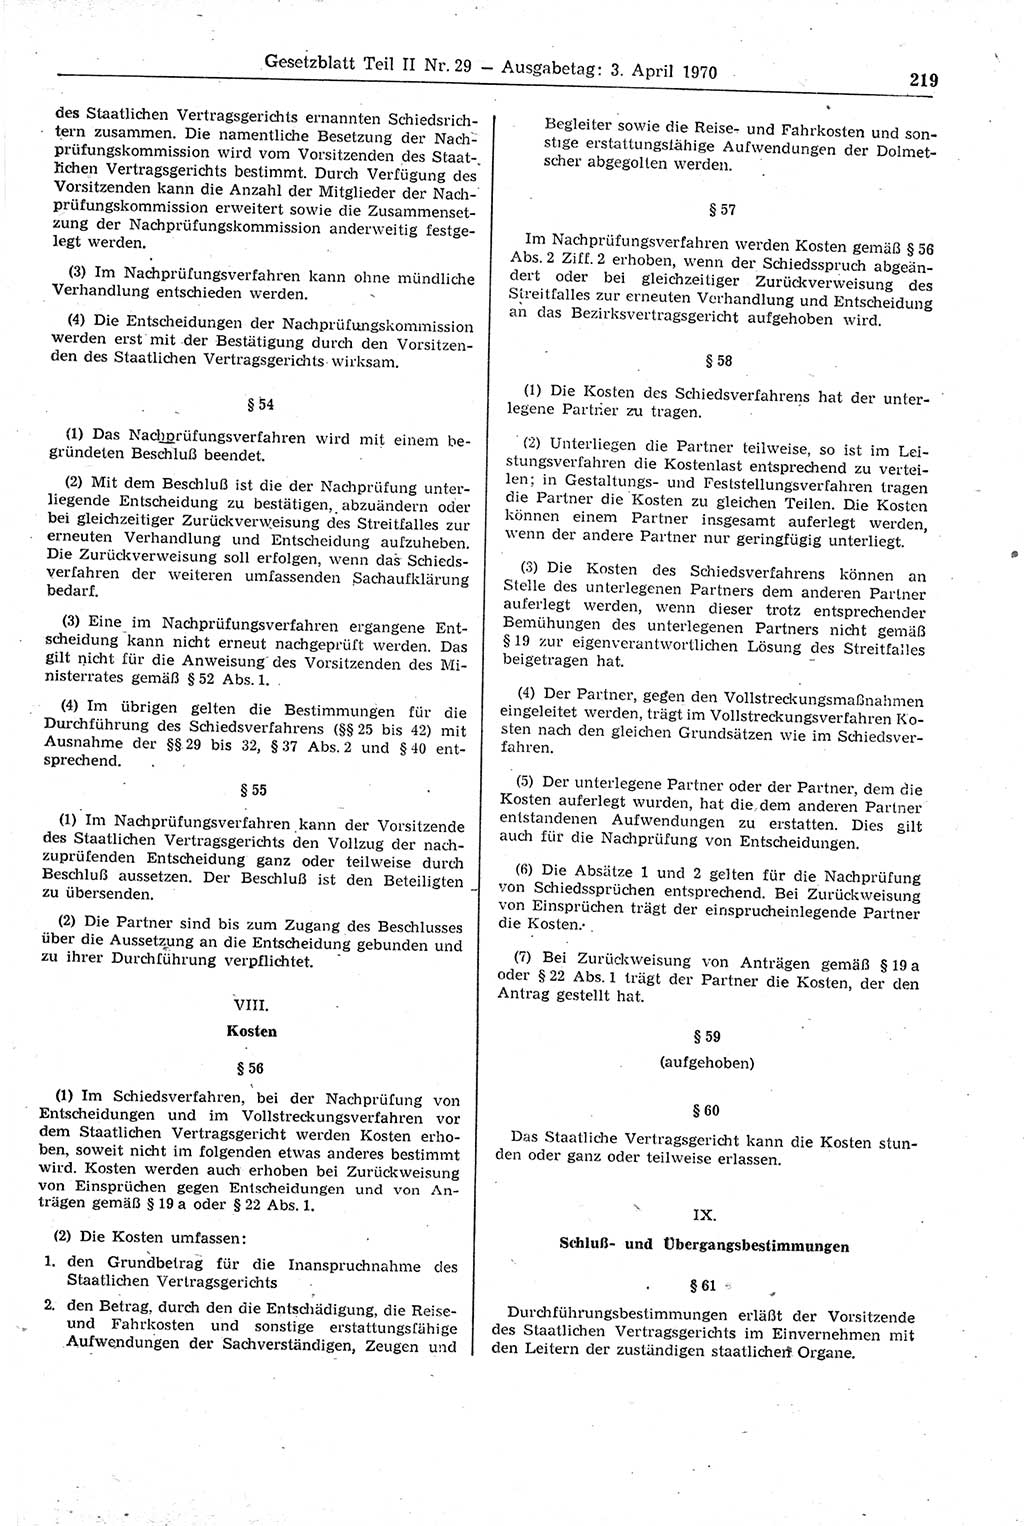 Gesetzblatt (GBl.) der Deutschen Demokratischen Republik (DDR) Teil ⅠⅠ 1970, Seite 219 (GBl. DDR ⅠⅠ 1970, S. 219)